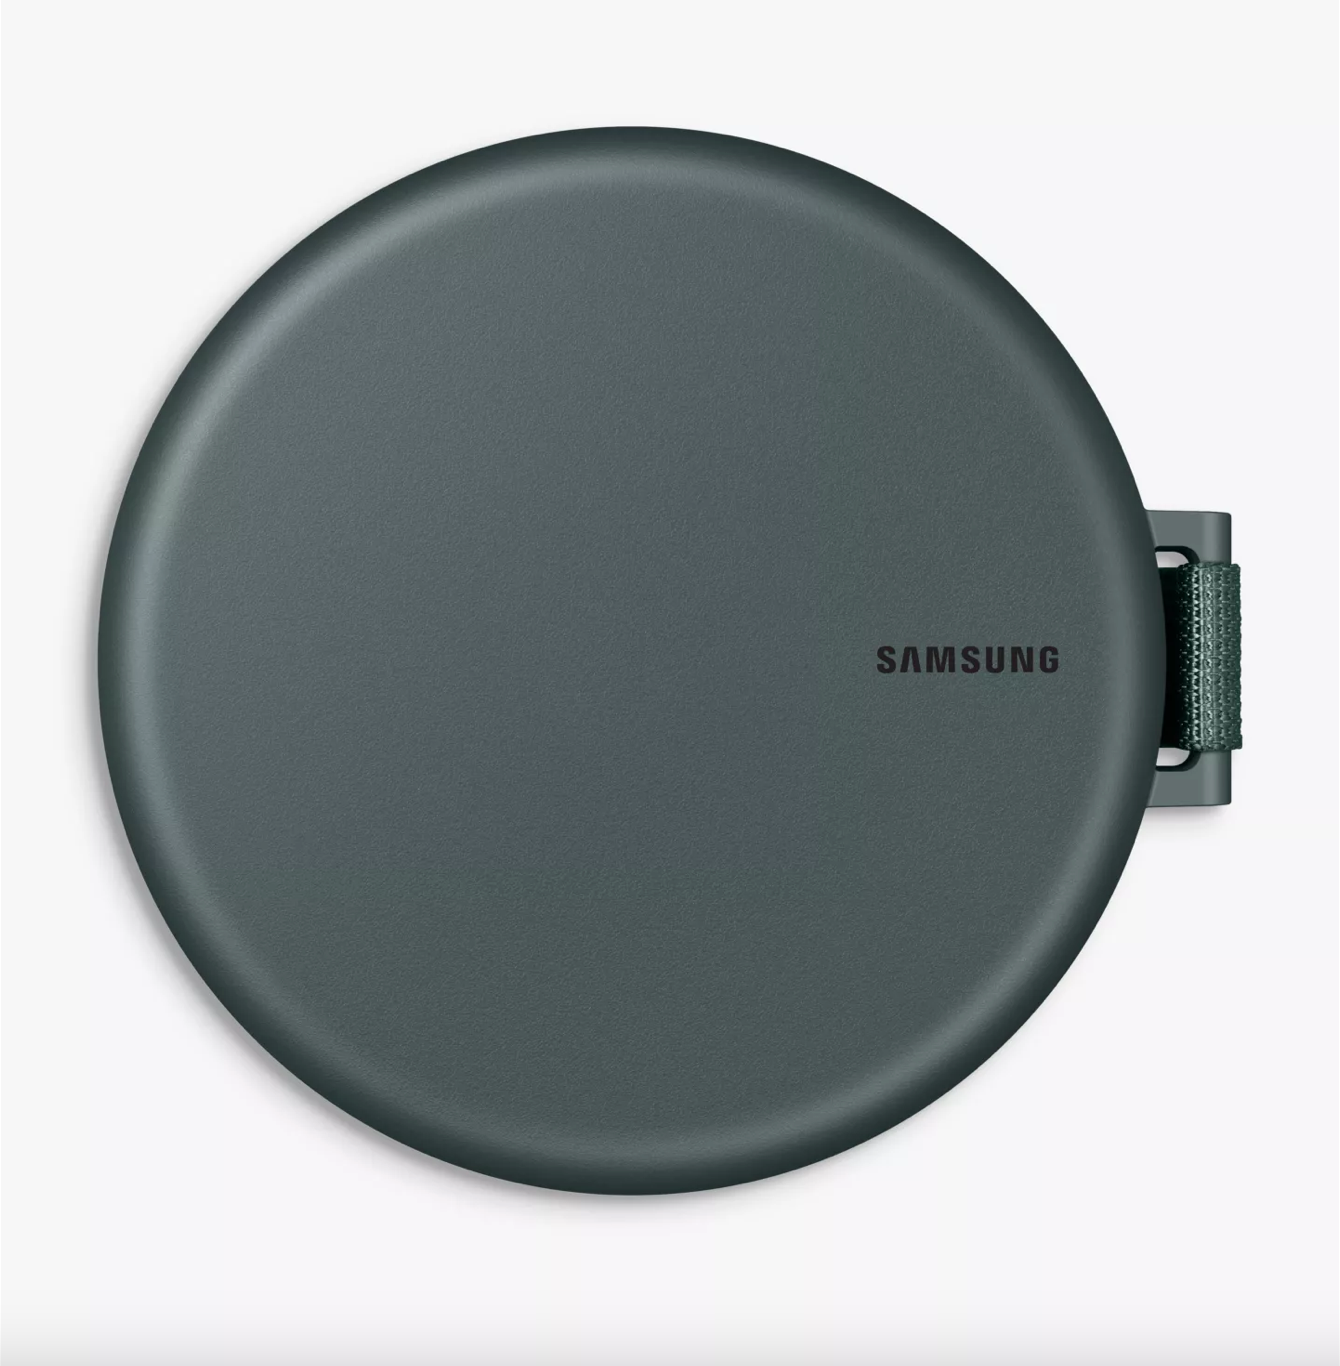 Samsung Freestyle Projector Case, Dark Green